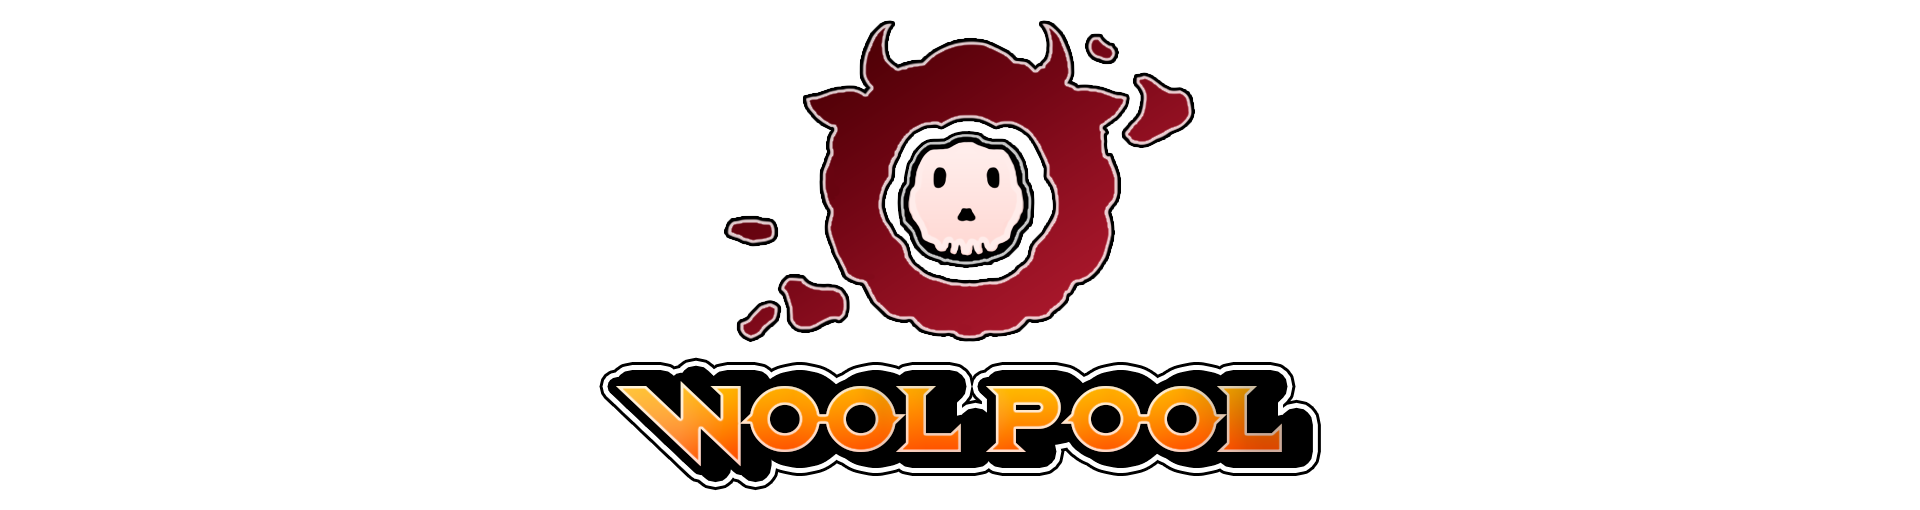 Wool Pool